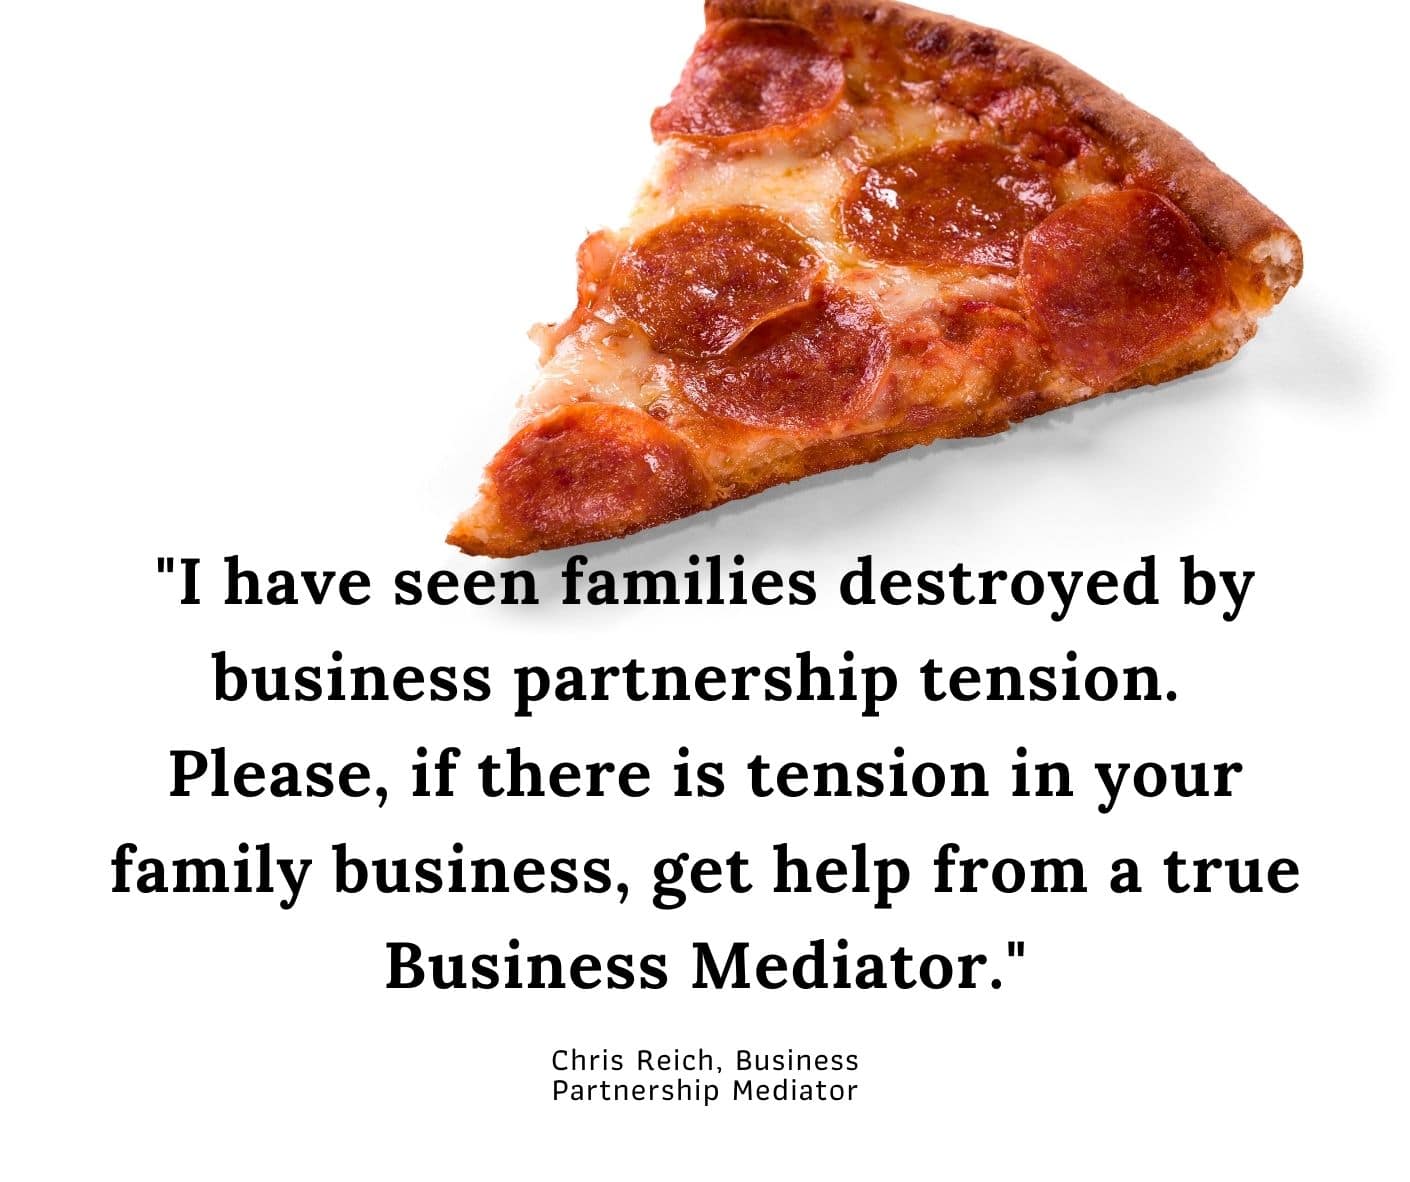 Partner Kills Partner in Family Pizza Business